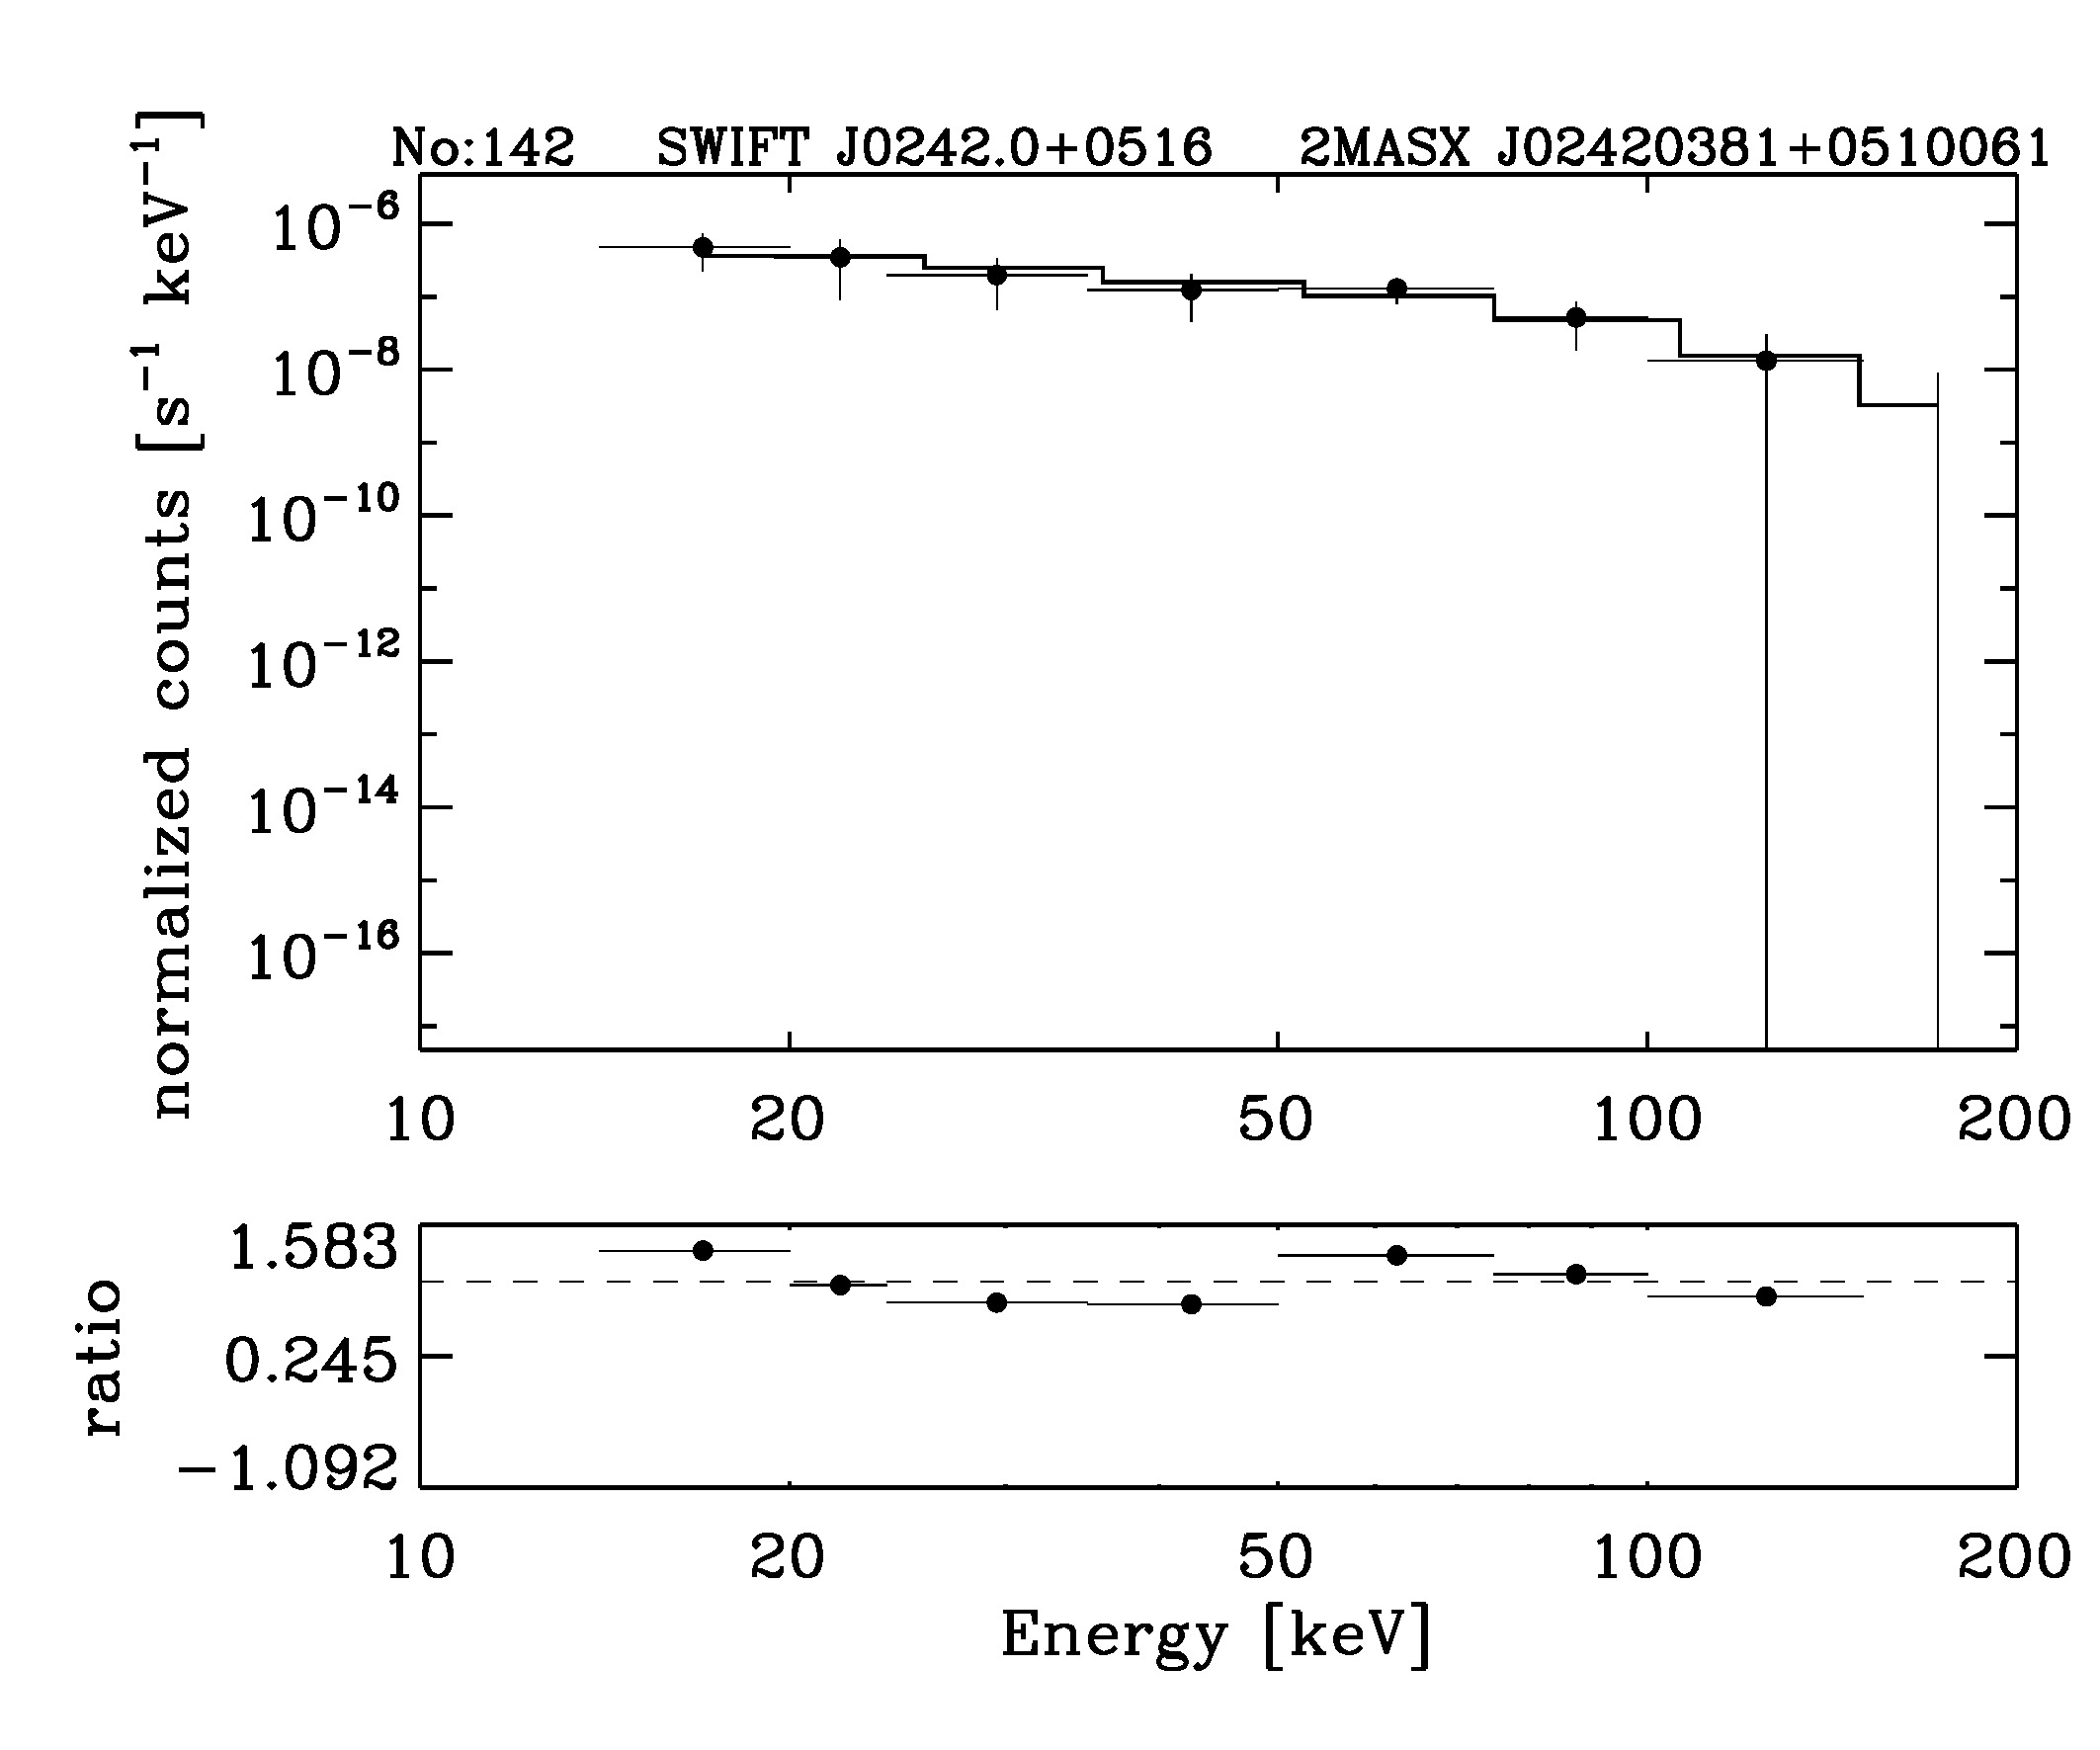 BAT Spectrum for SWIFT J0242.0+0516